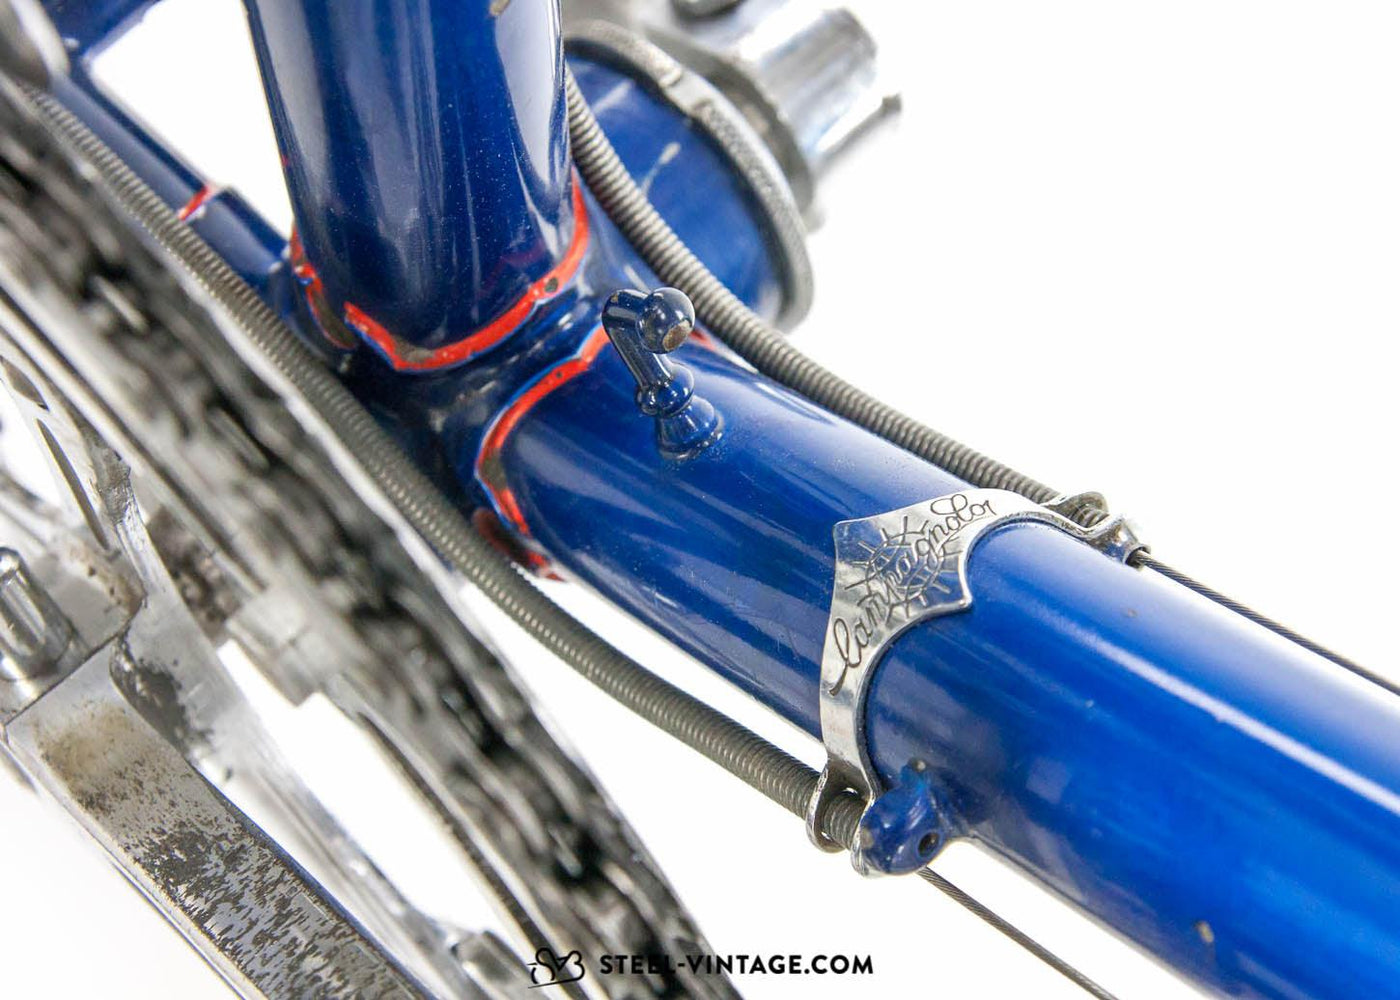 Rixe Export De Luxe Classic Road Bike 1950s - Steel Vintage Bikes